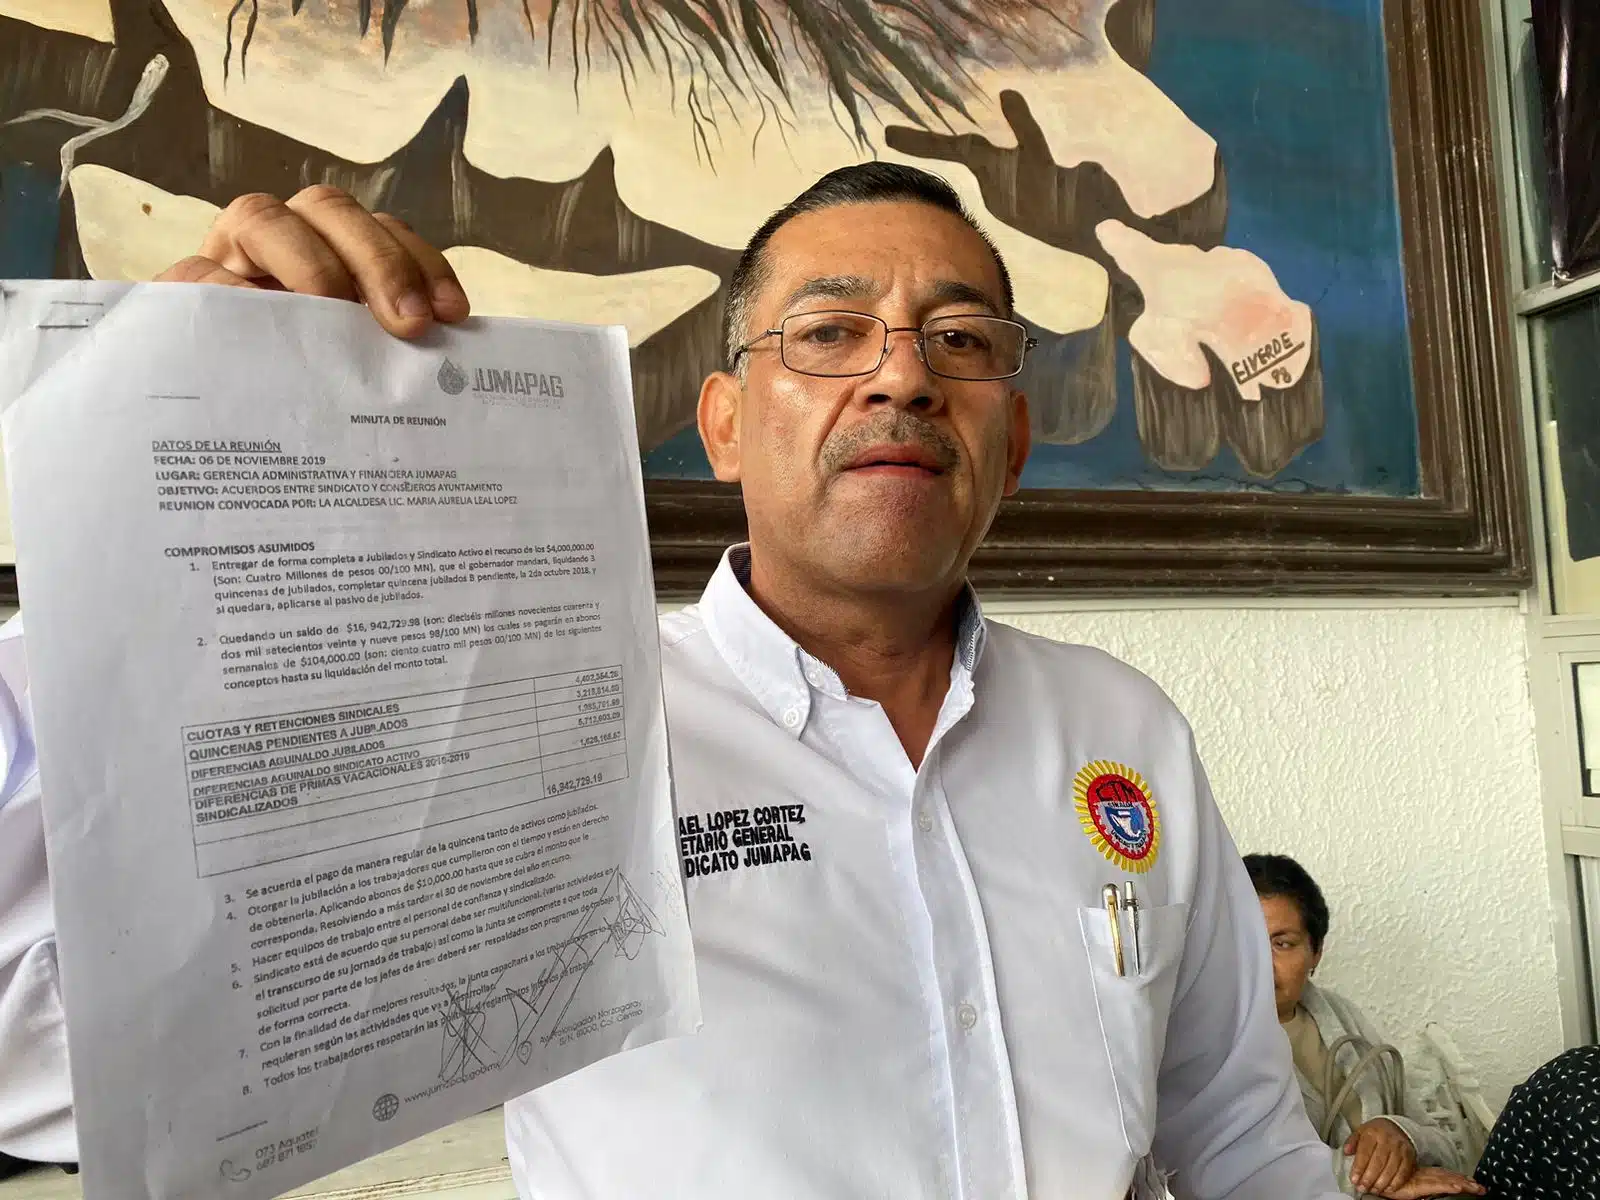 Israel López Cortez, líder de la Jumapag, mostrando un documento